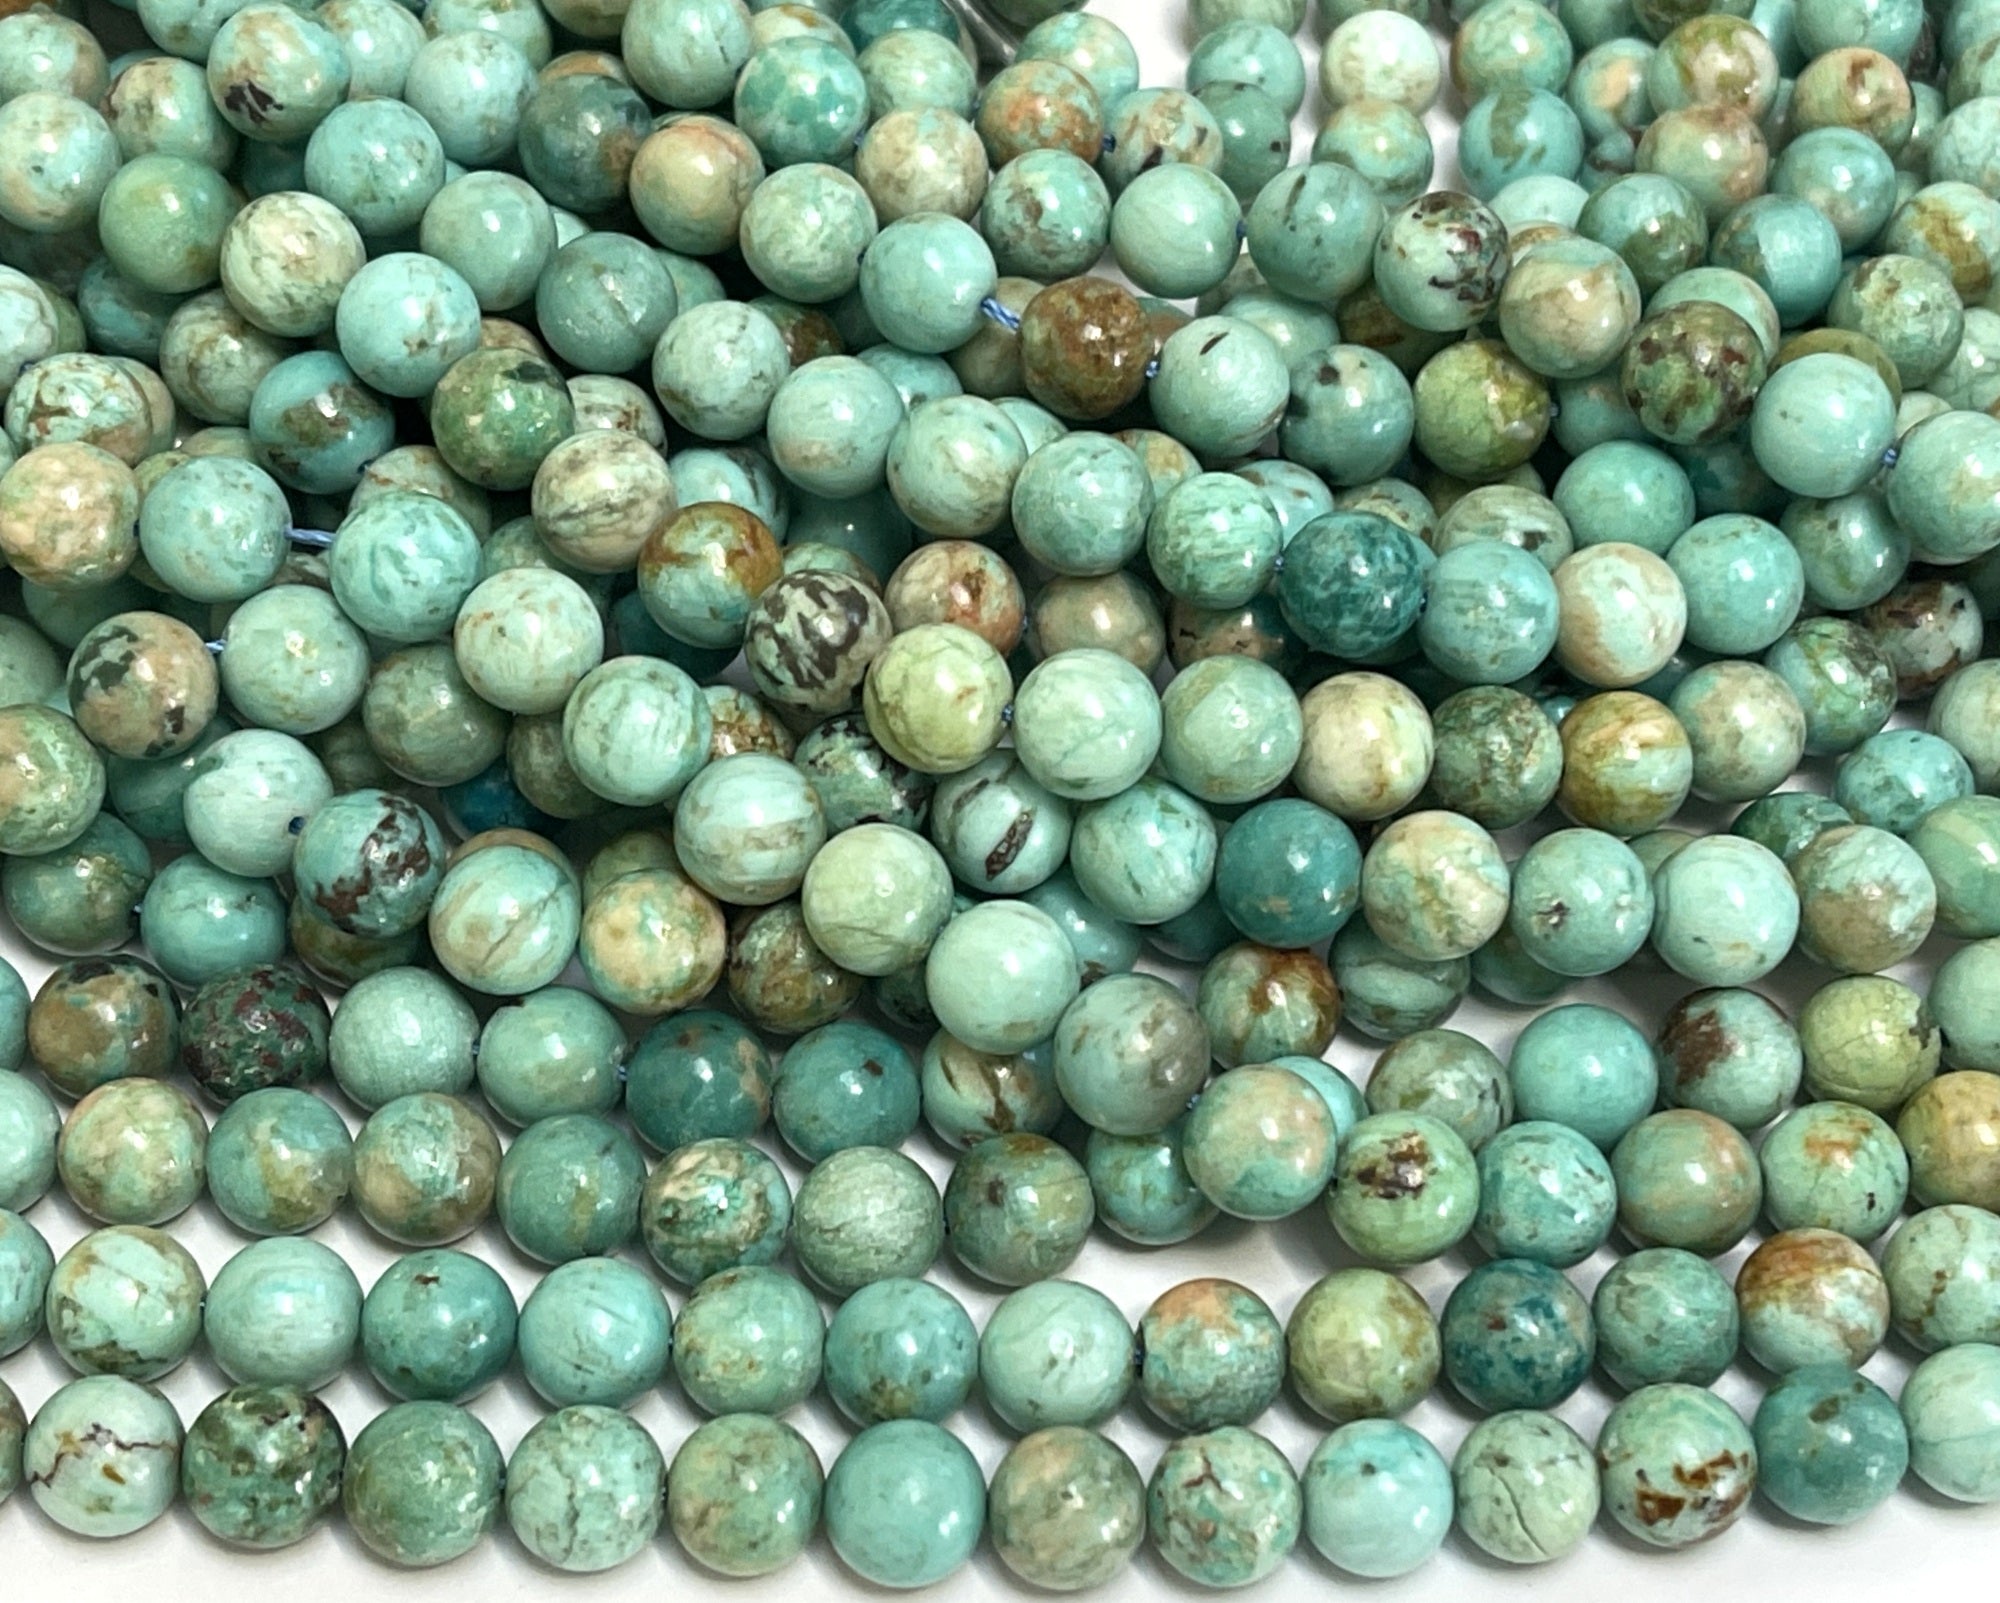 Peruvian Turquoise 8mm round natural gemstone beads 15.5" strand